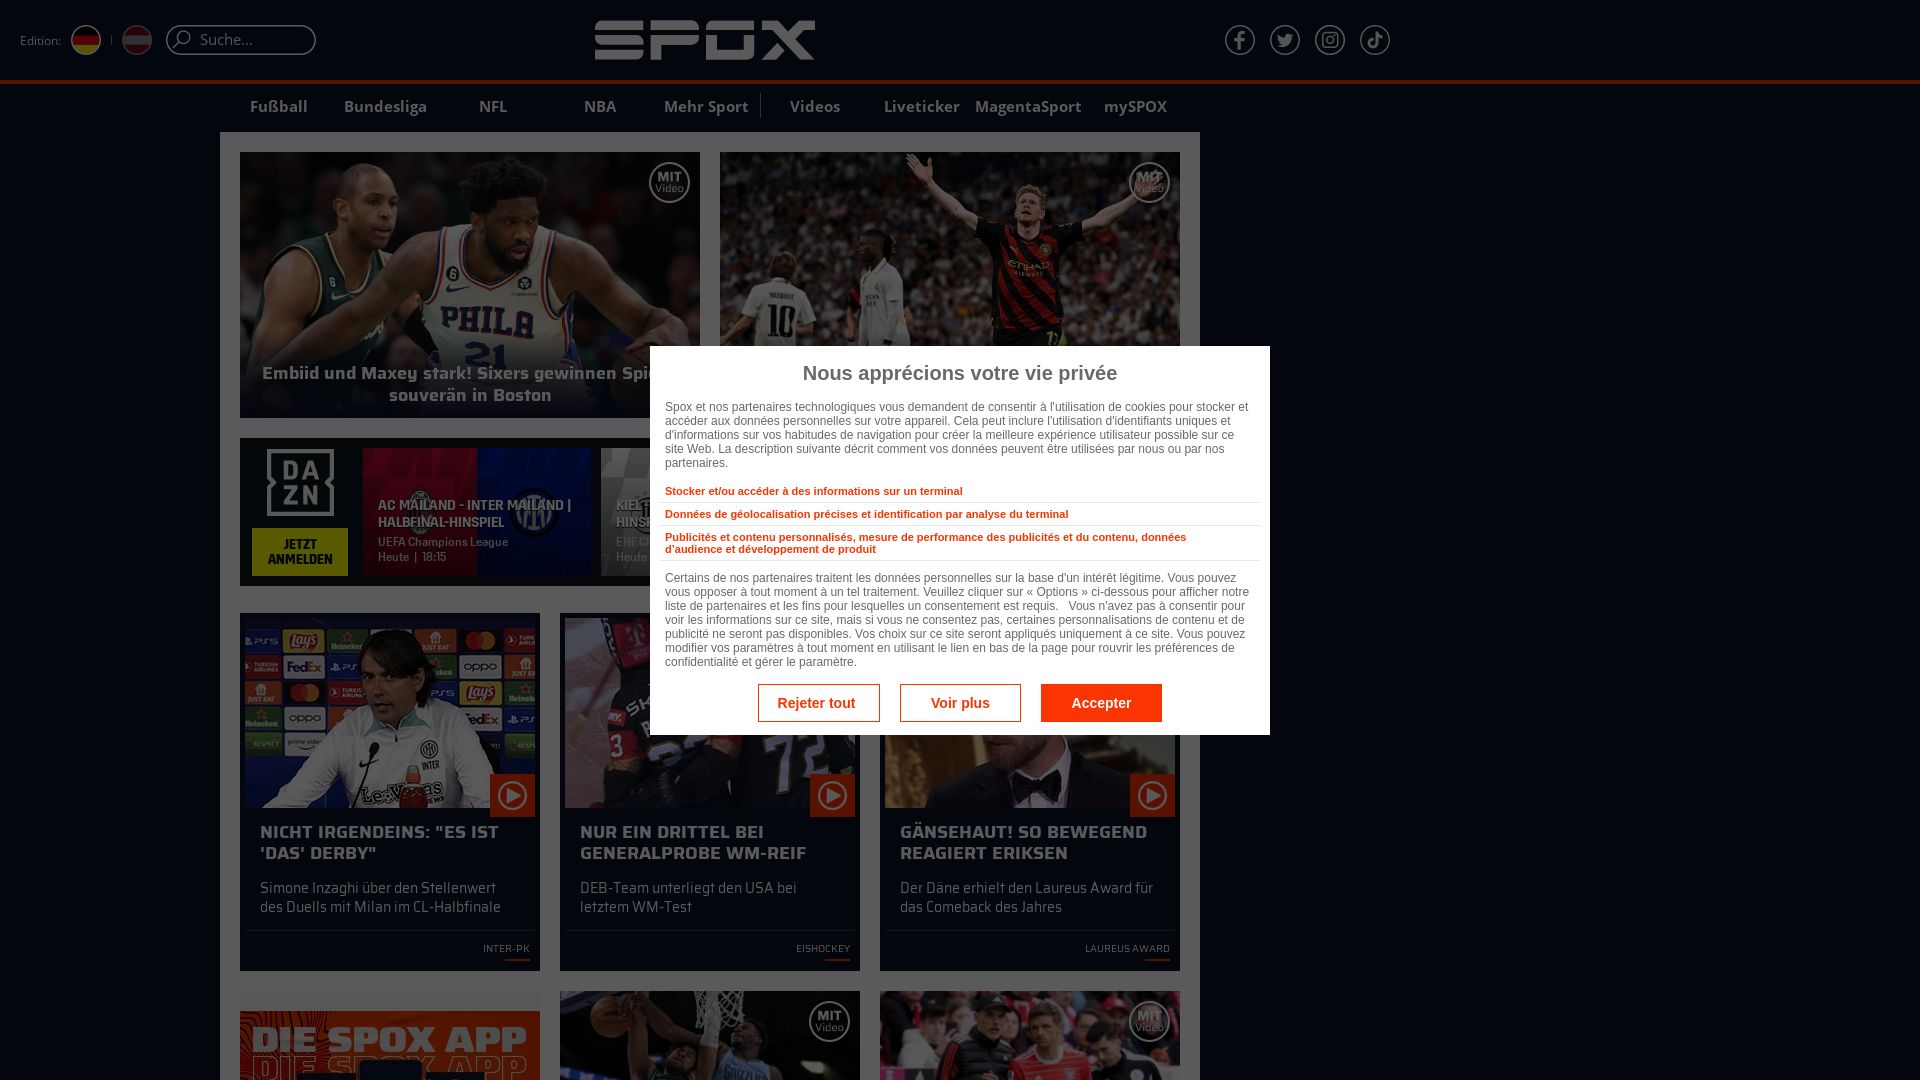 Stato del sito web spox.com è   ONLINE